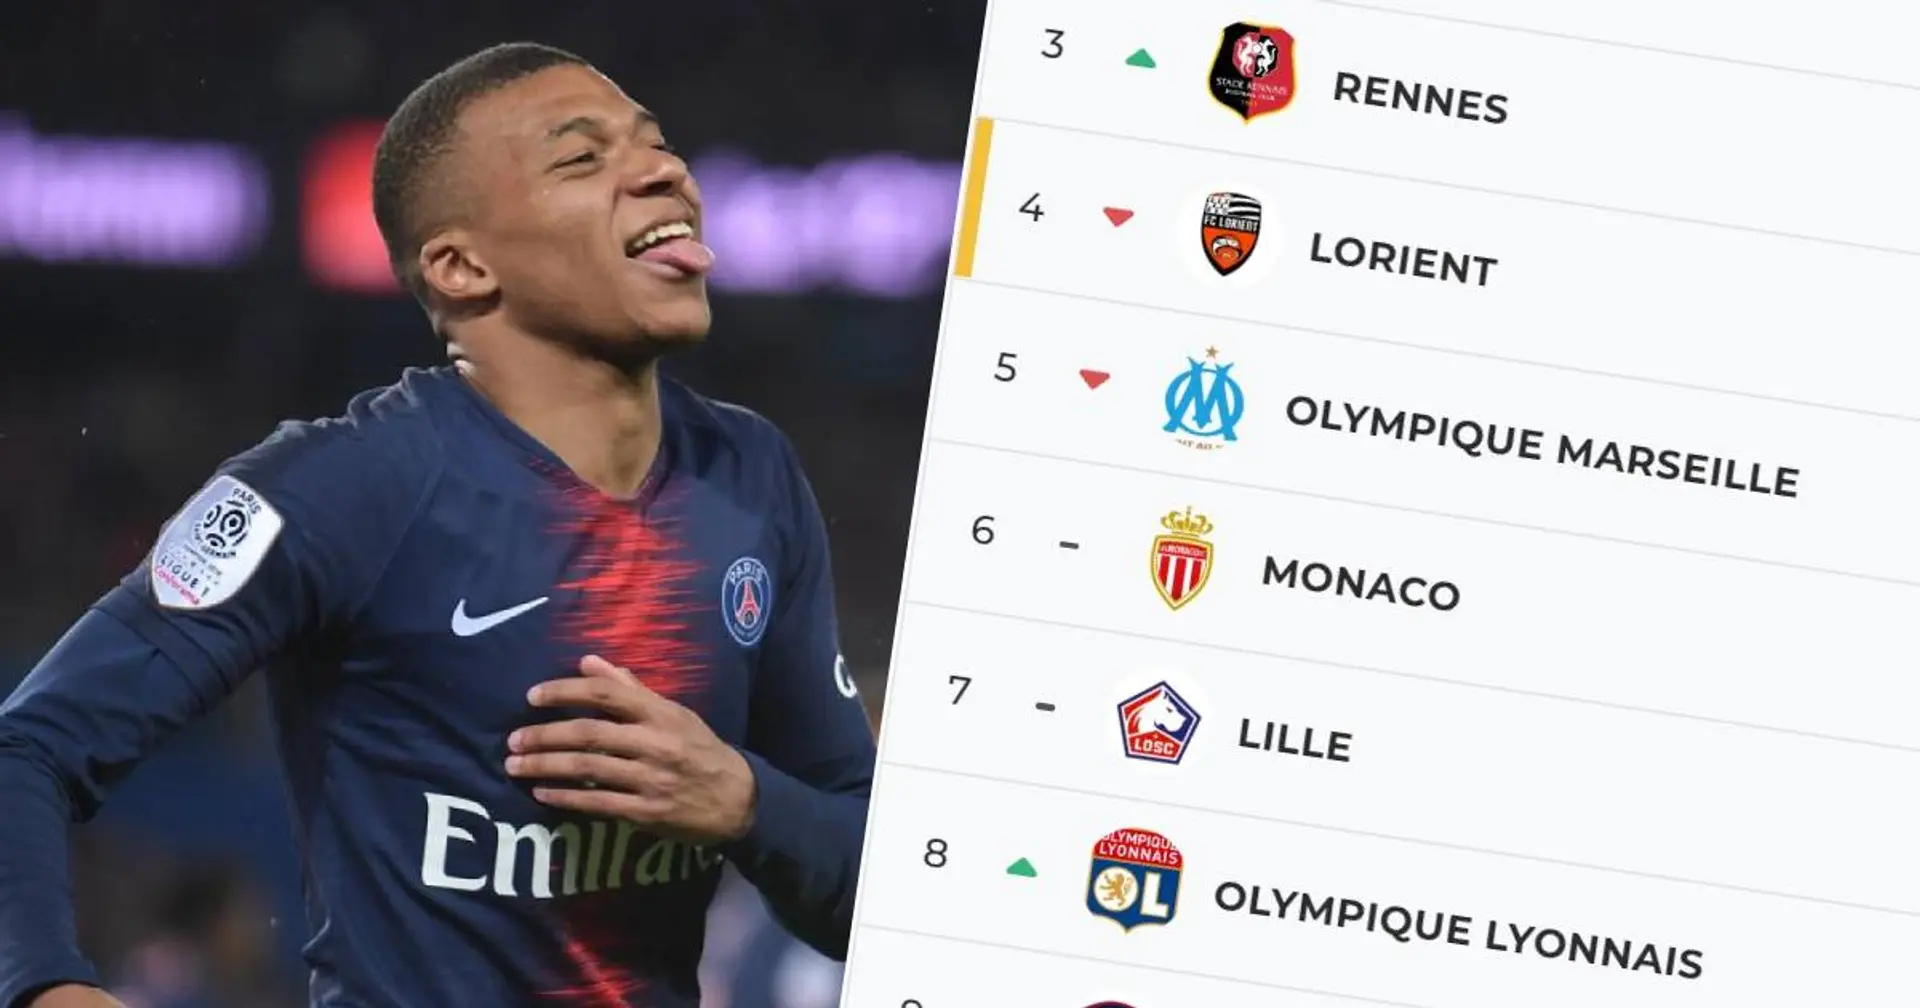 Nouveau dauphin pour le PSG - classement et résultats détaillés après la treizième journée de Ligue 1